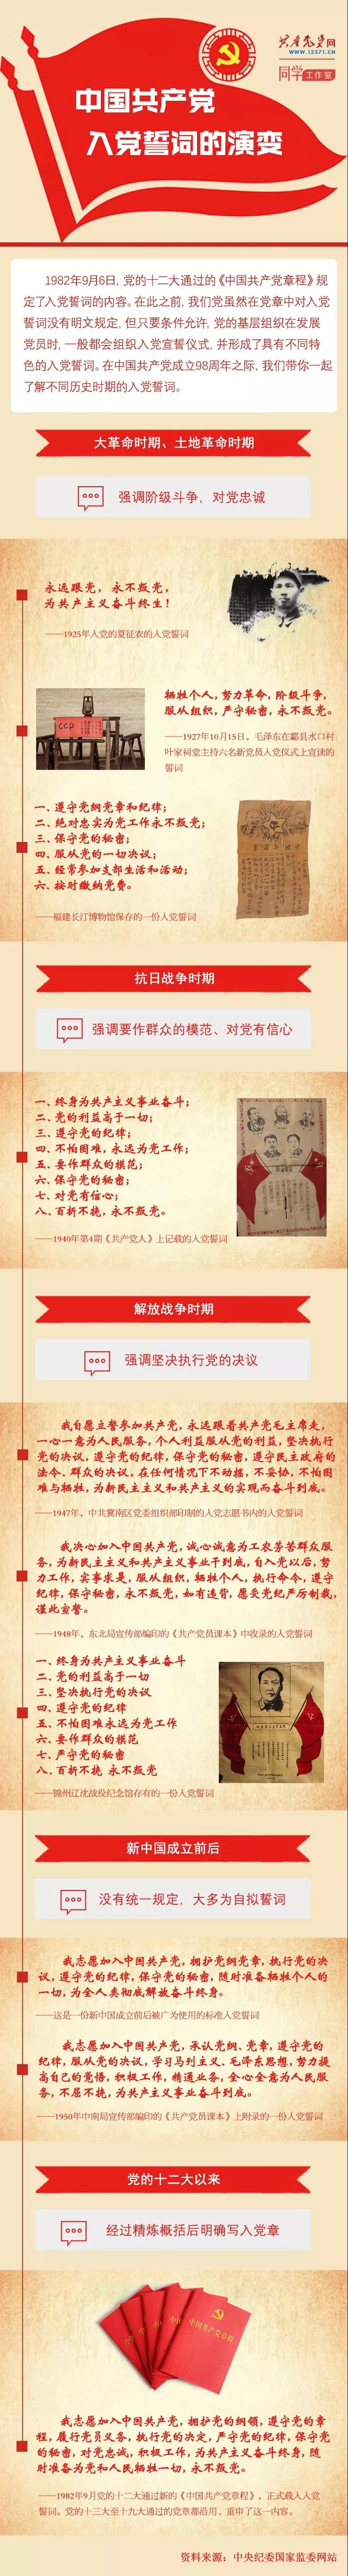 一图看懂中国共产党入党誓词的演变